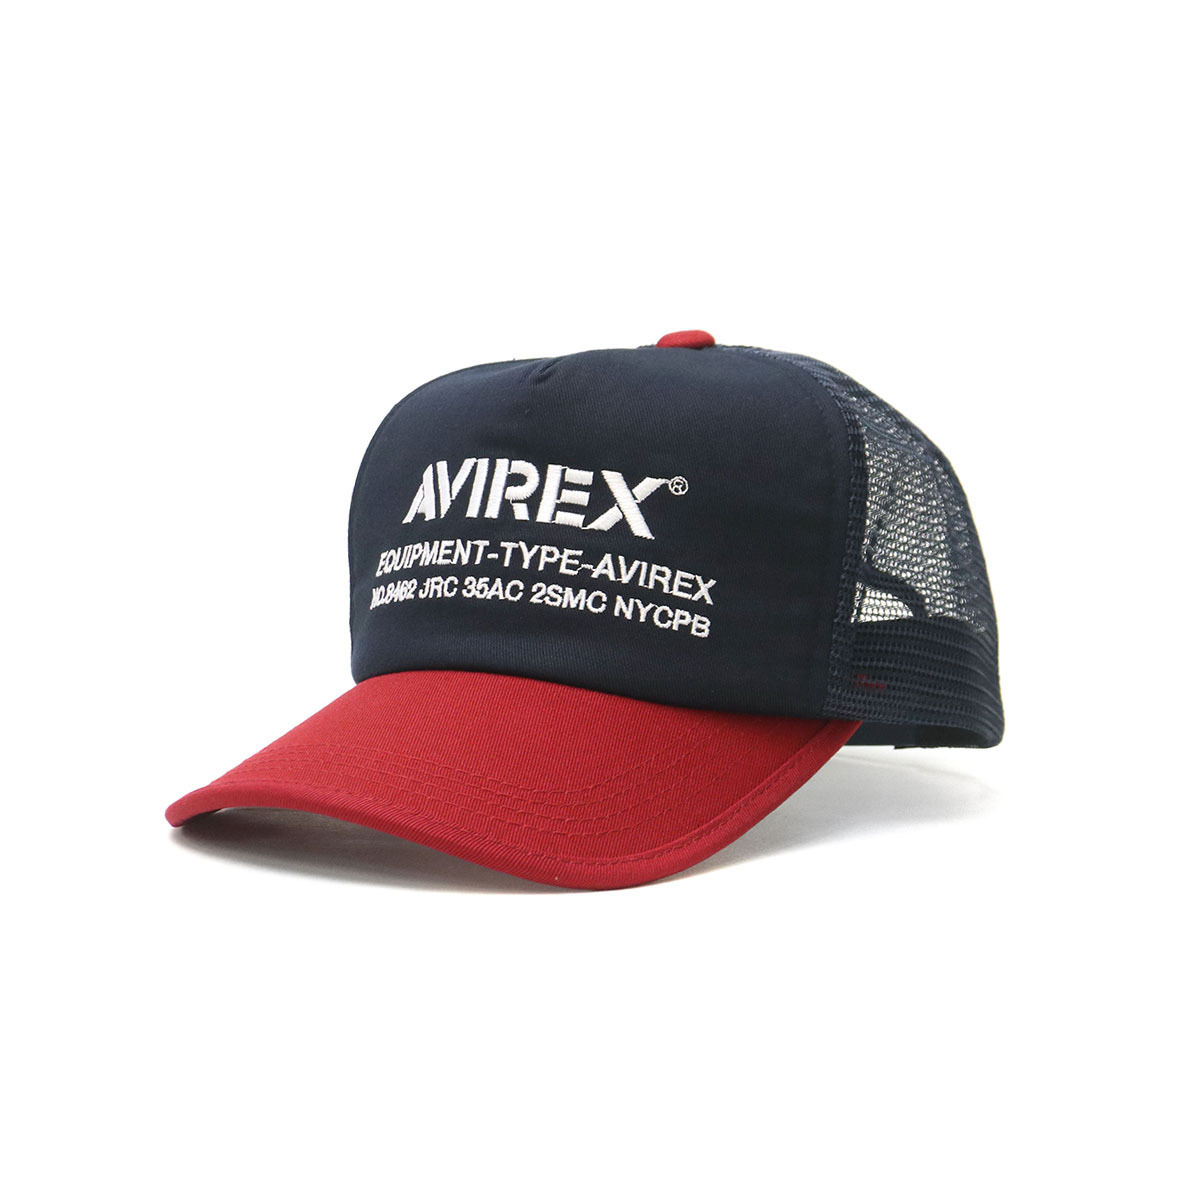 アヴィレックス キャップ AVIREX NUMBERING MESH CAP 帽子 メッシュキャップ...